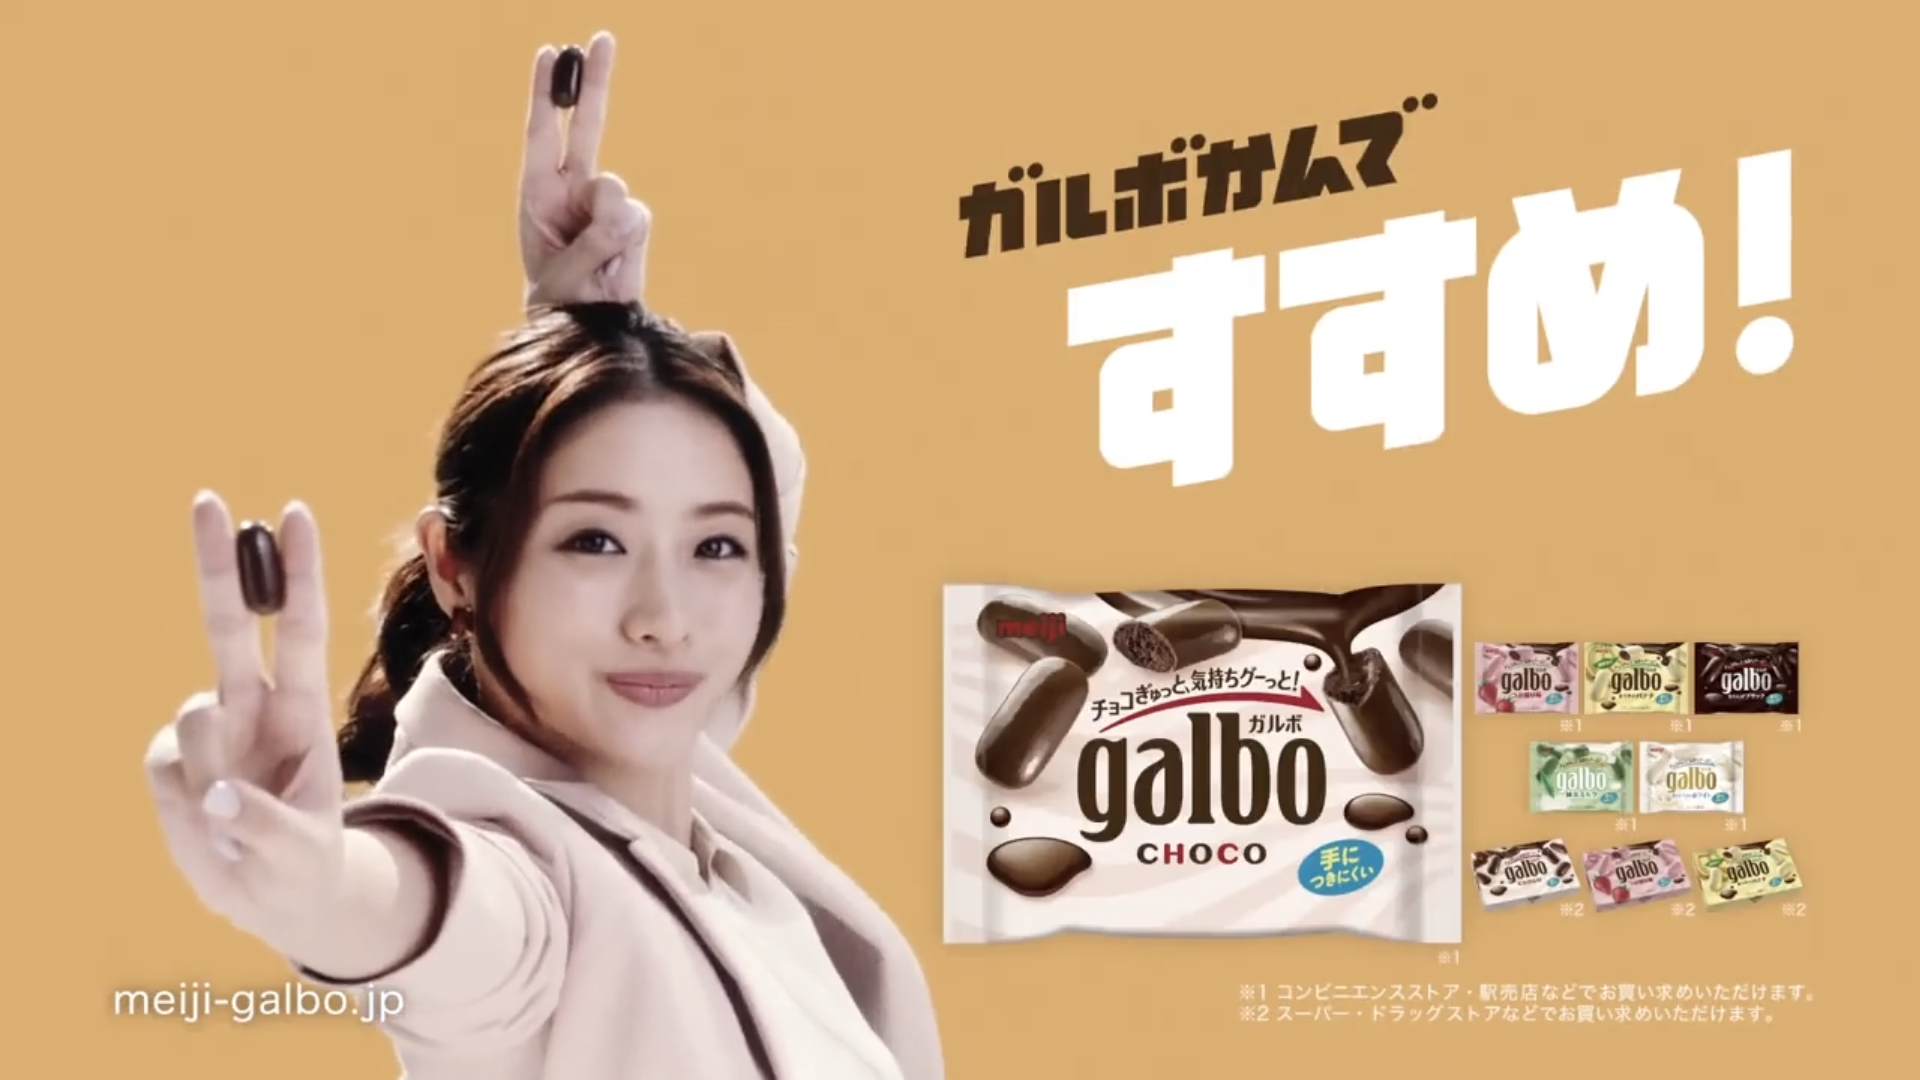 日本石原里美巧克力广告